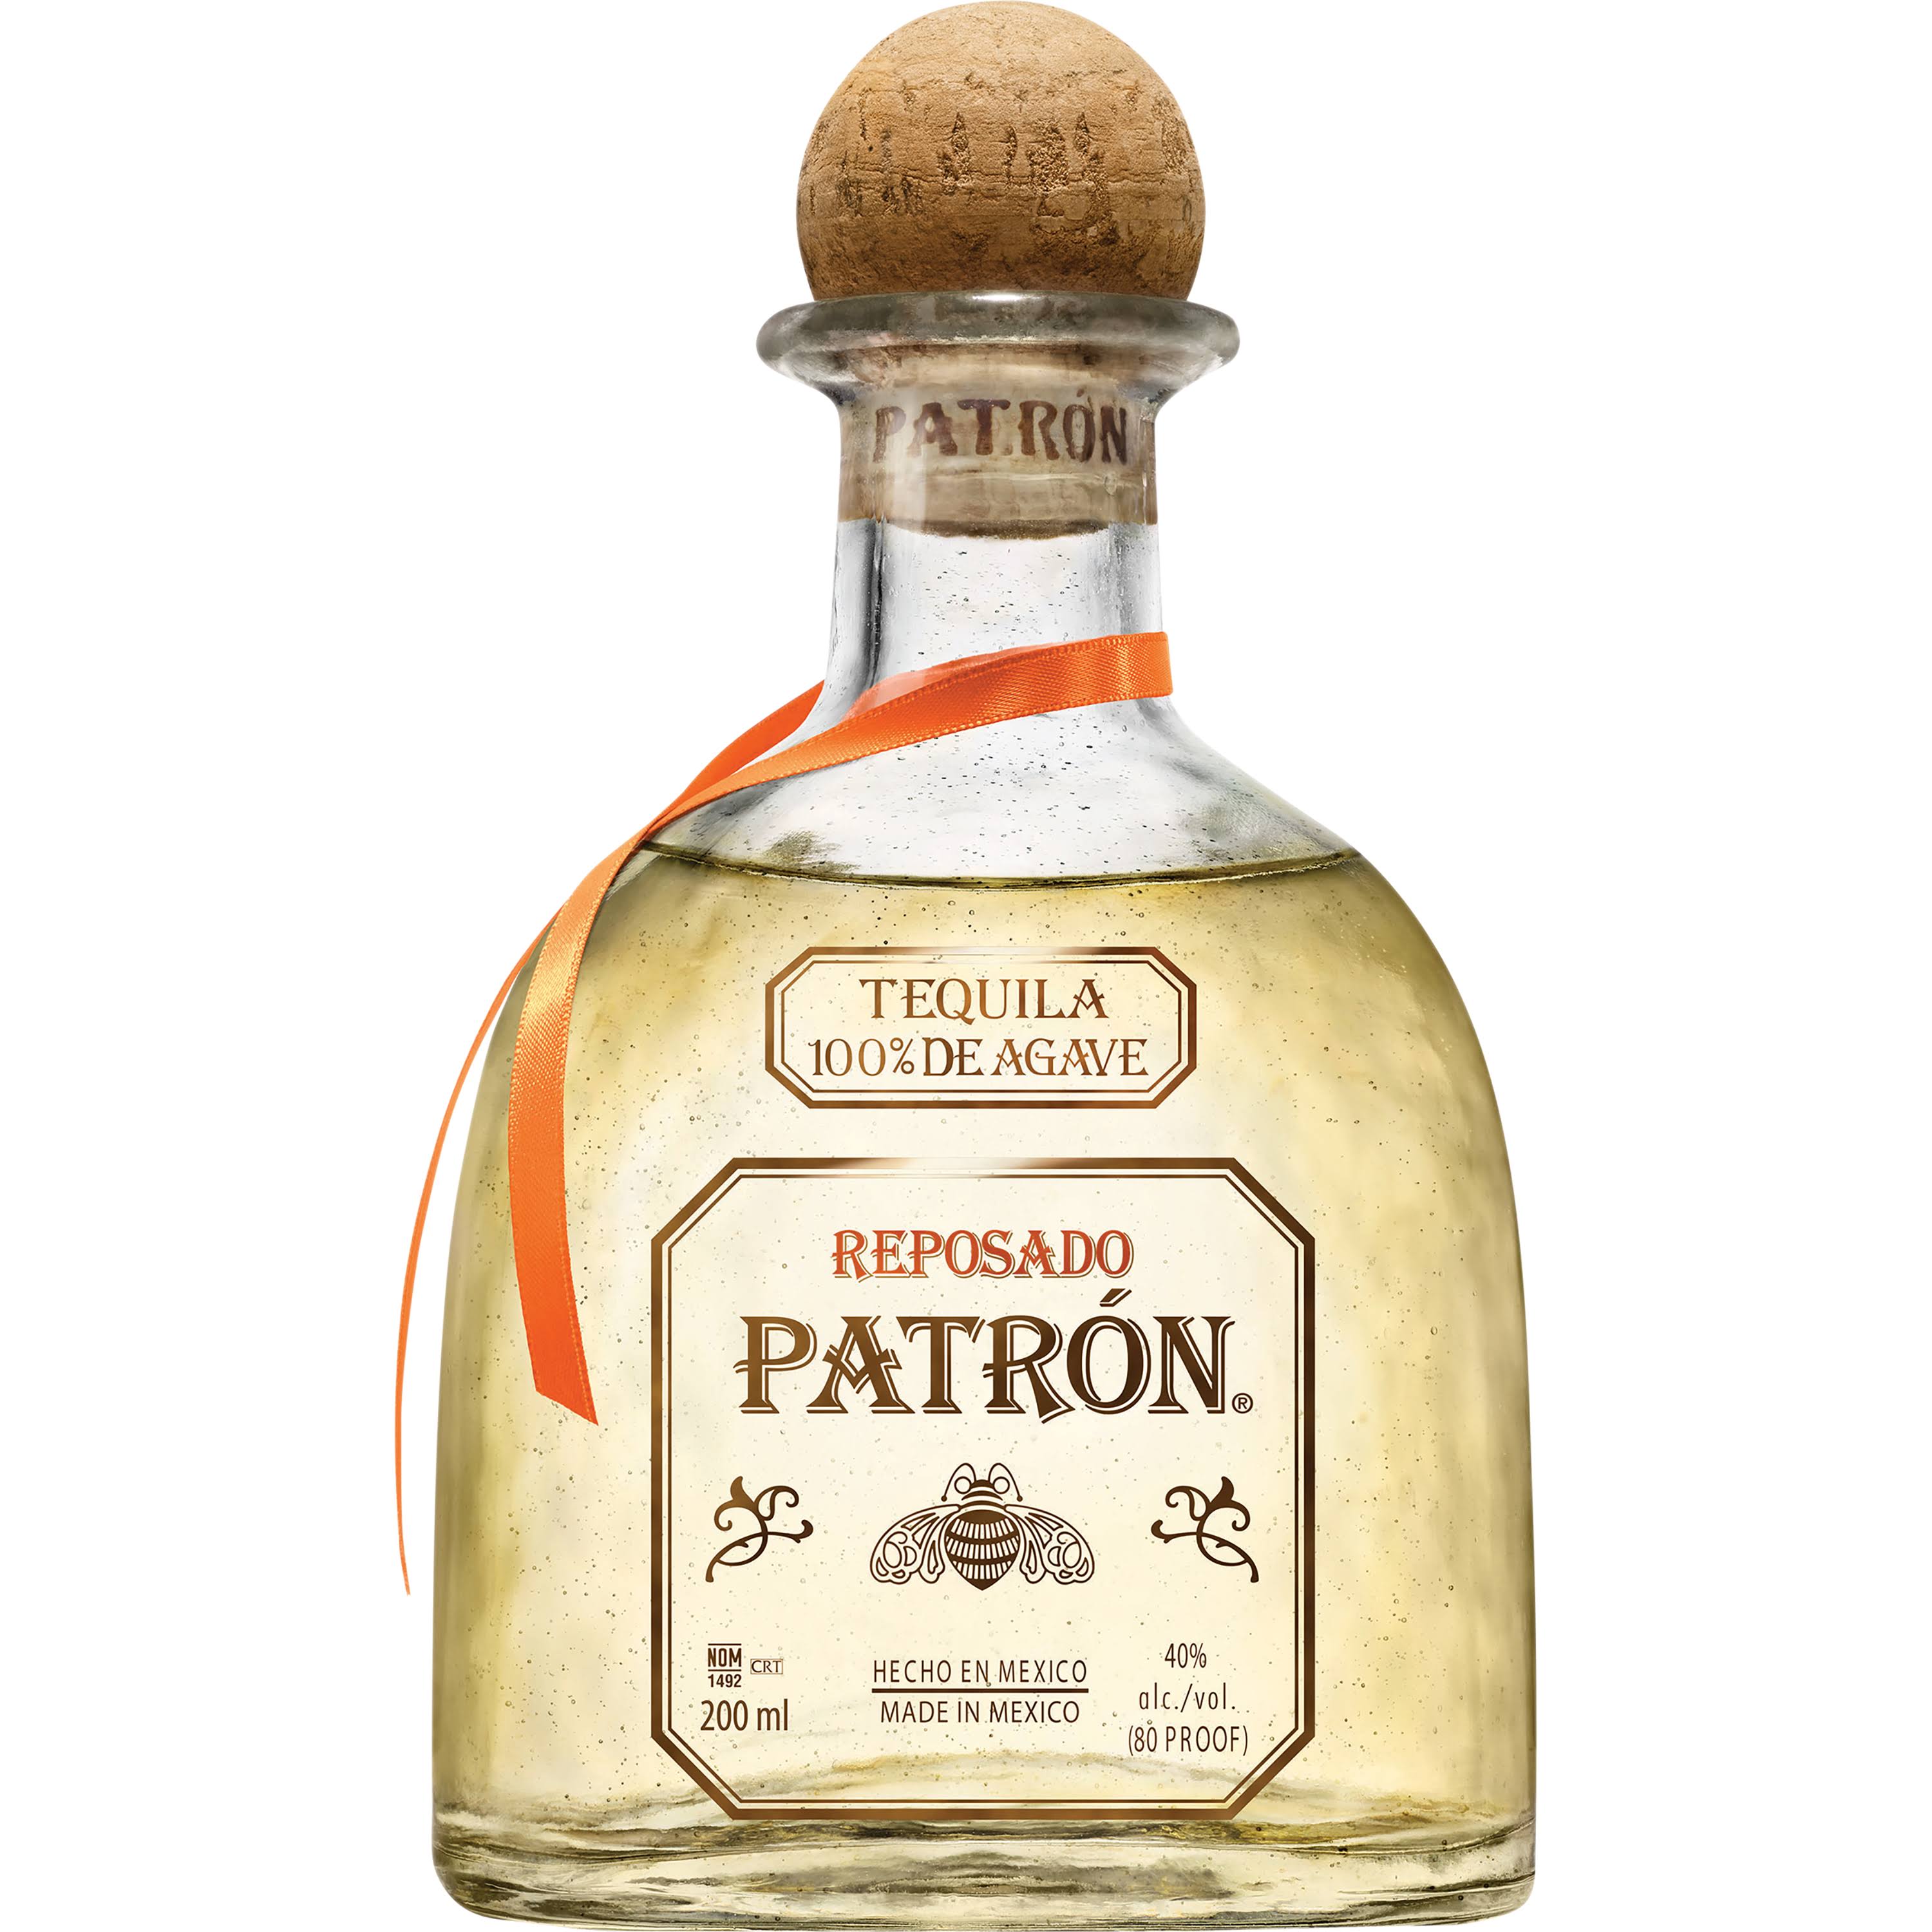 Patron Reposado Tequila - 200 ml bottle